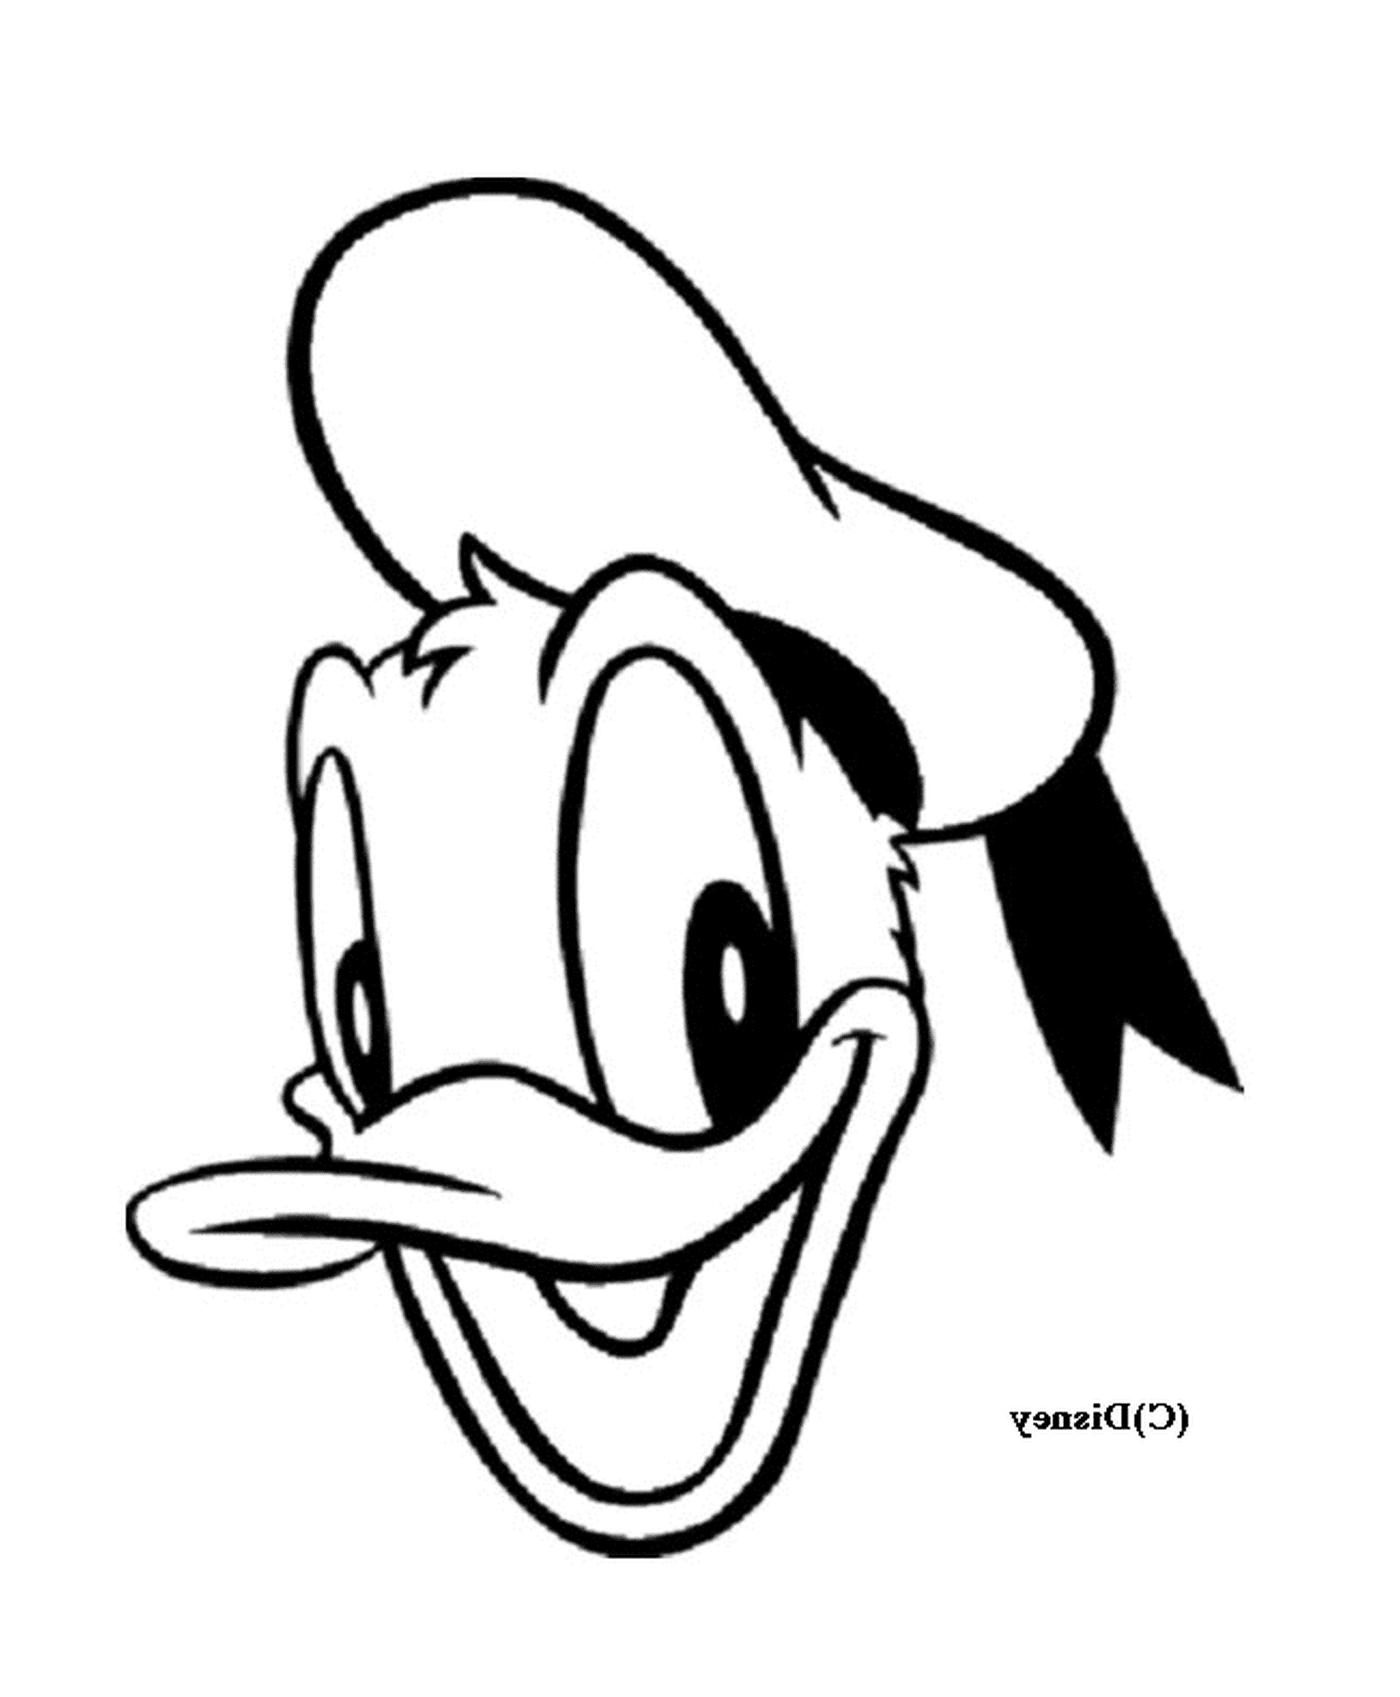 coloriage dessin de la tete de Donald Disney